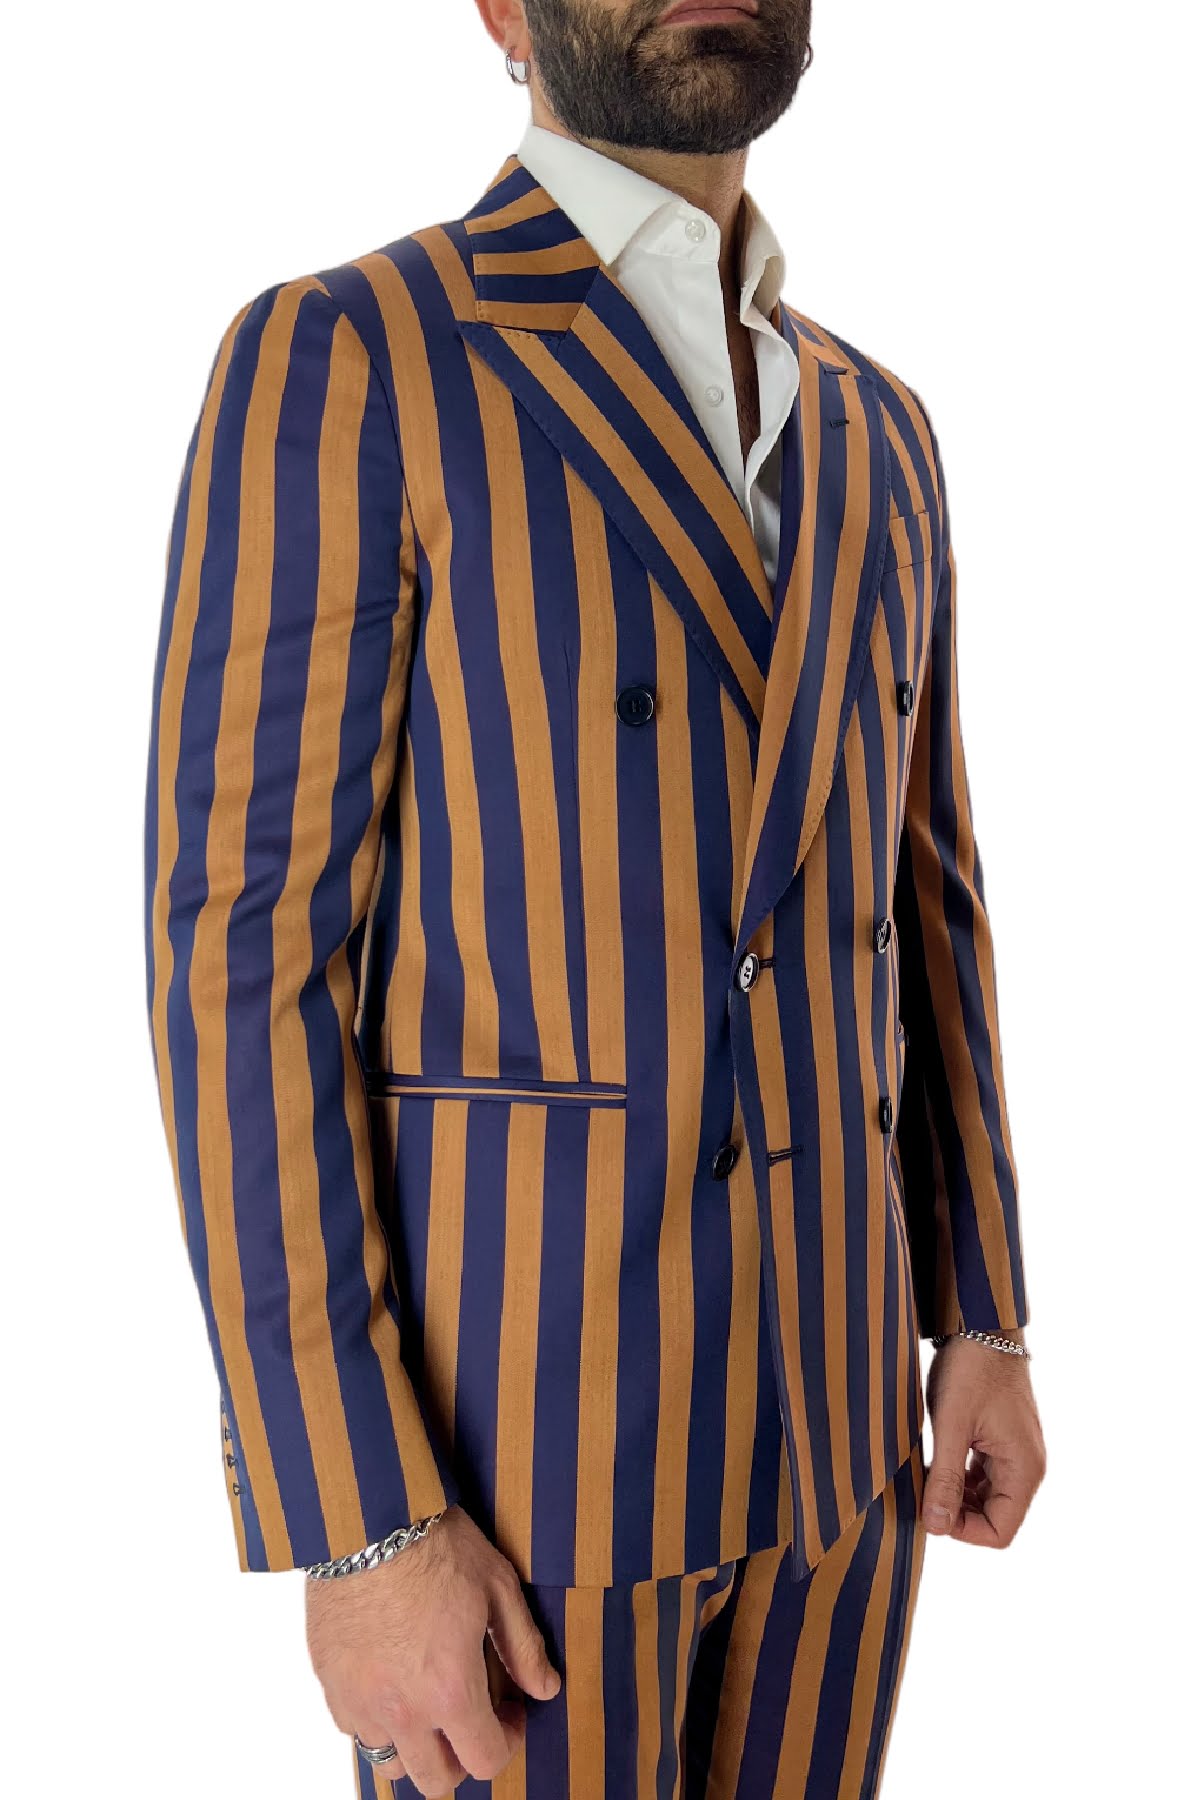 Abito uomo arancio riga blu con giacca doppiopetto e pantalone vita alta in fresco lana 120’s Holland & Sherry